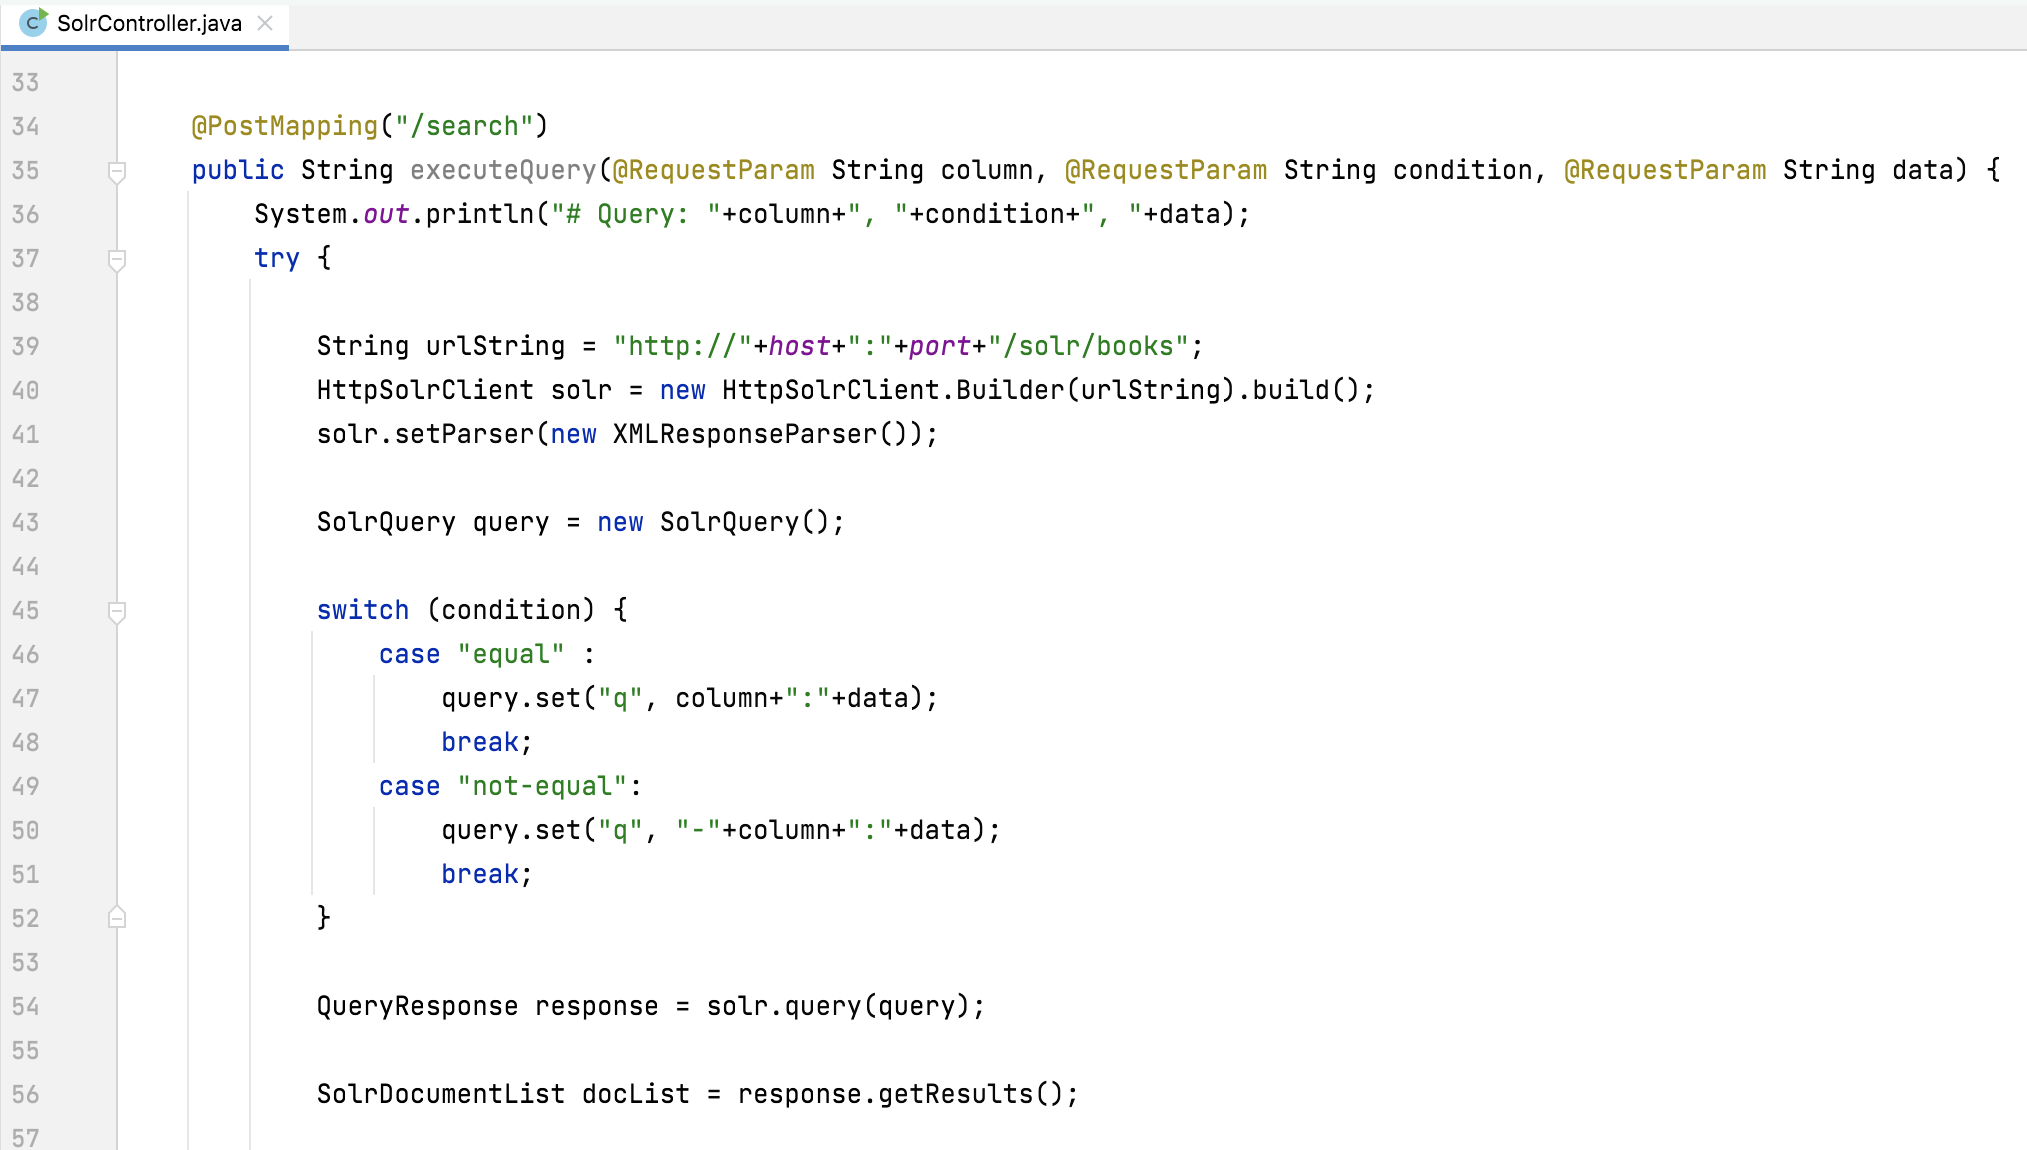 client java code line details